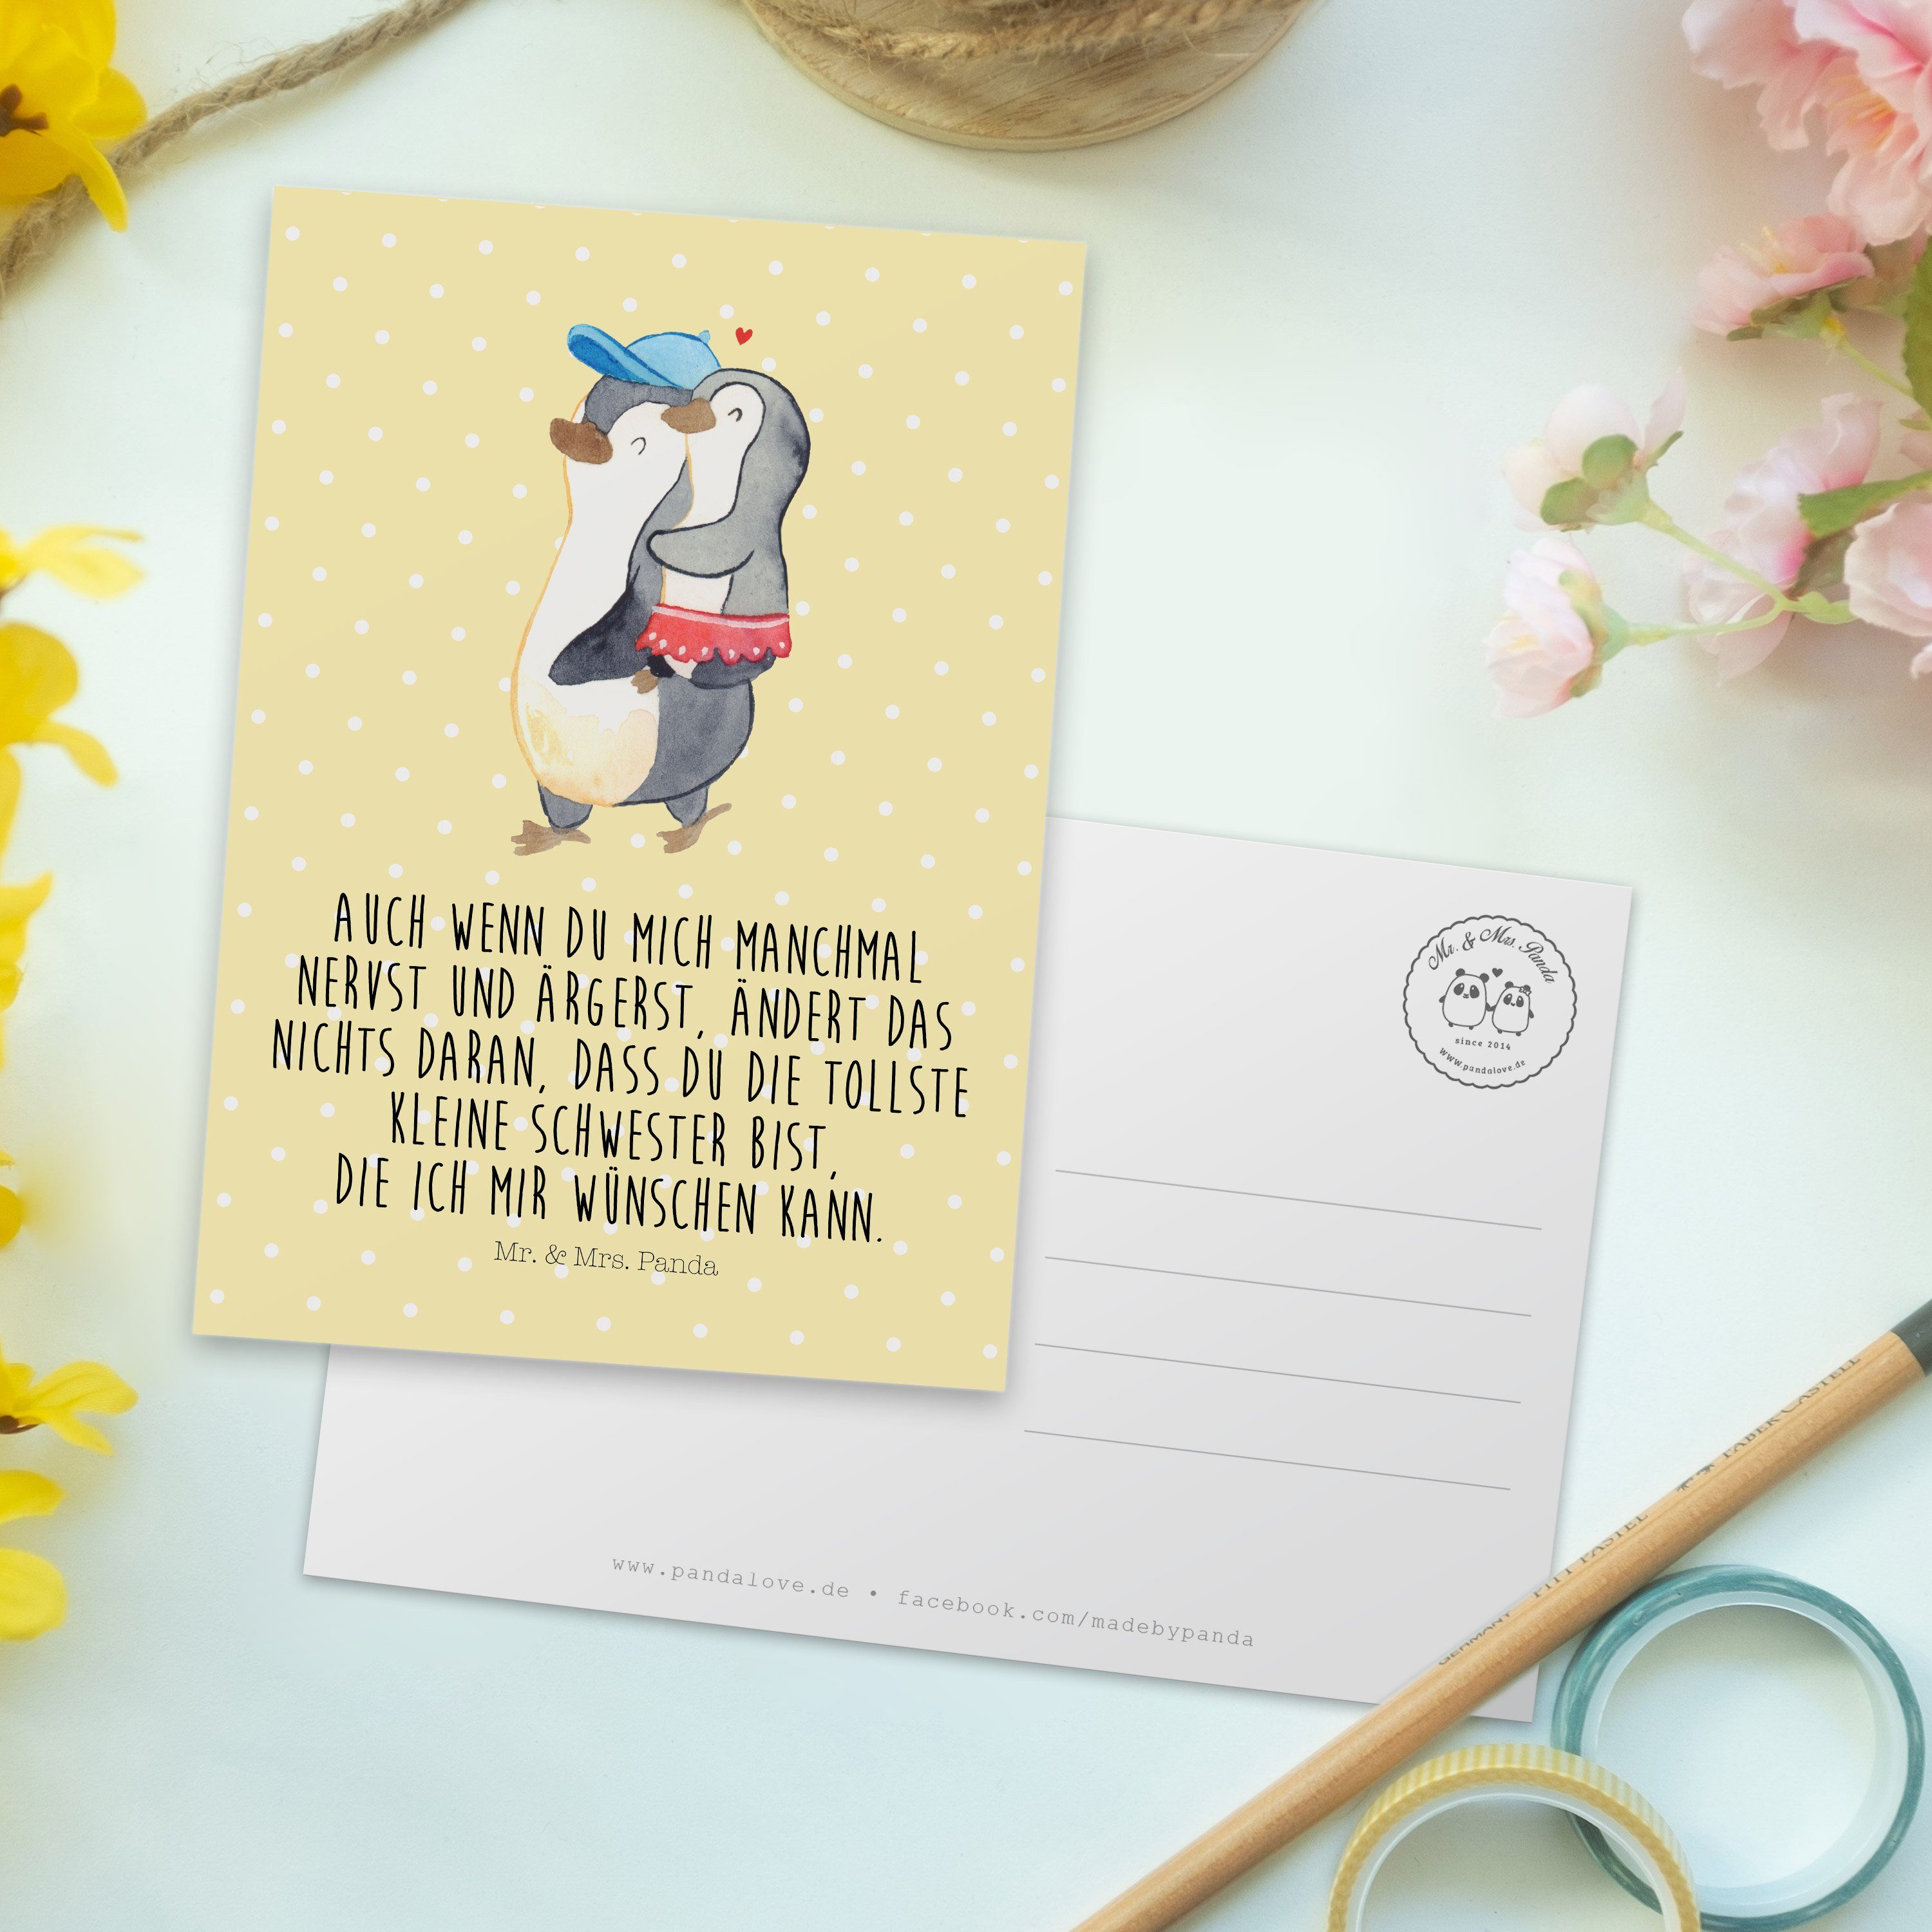 Mr. & Mrs. Panda Vatert - Einladung, Kleine Schwester Pinguin Postkarte Gelb Pastell - Geschenk